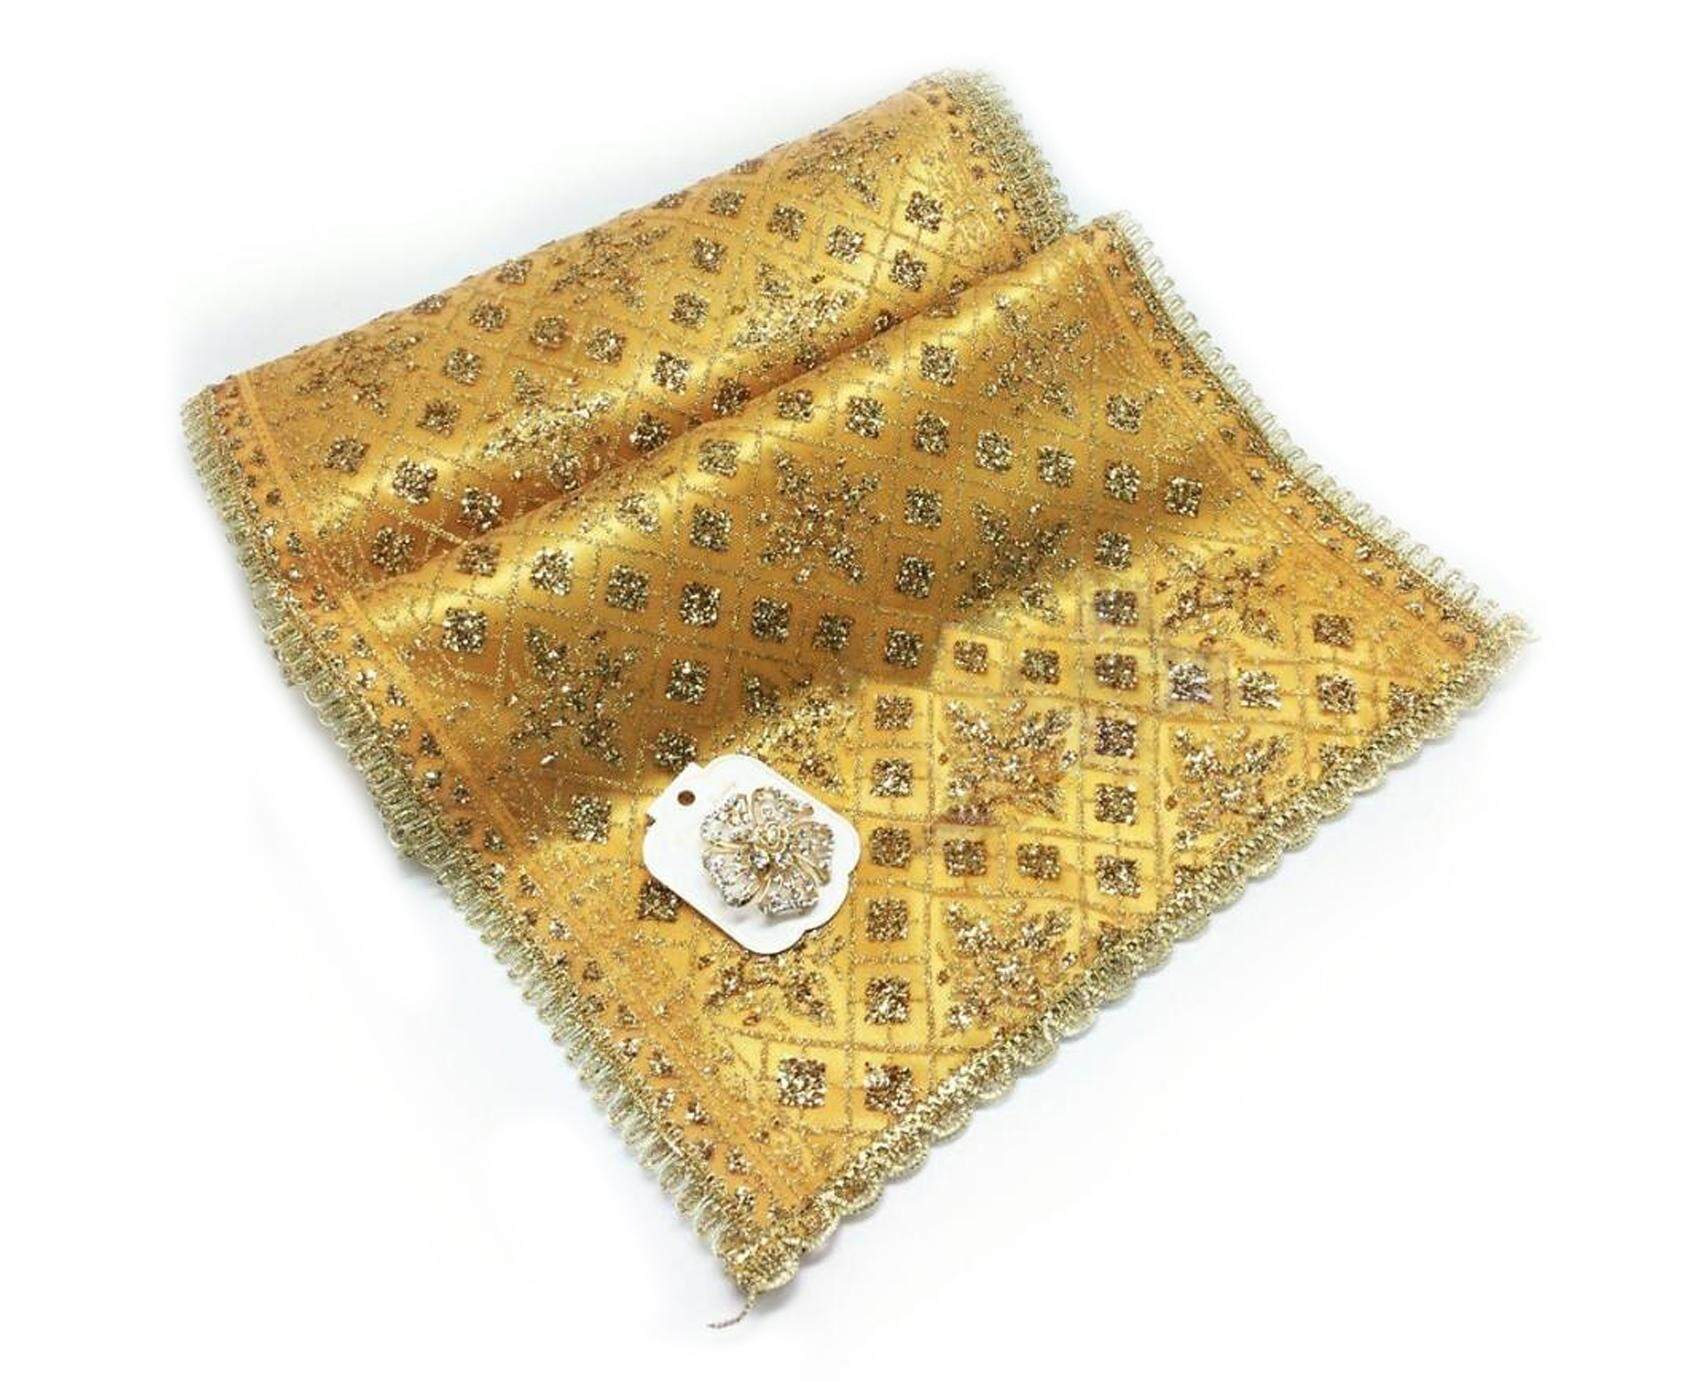 ผ้าห่มพระพุทธรูปเลื่อมทองแบบสวย ผ้าห่มพระสไบทอง ขนาด 4 เมตร กว้าง 12 นิ้ว เหมาะสำหรับห่มพระประทาน ในโบสถ์หรือวิหาร